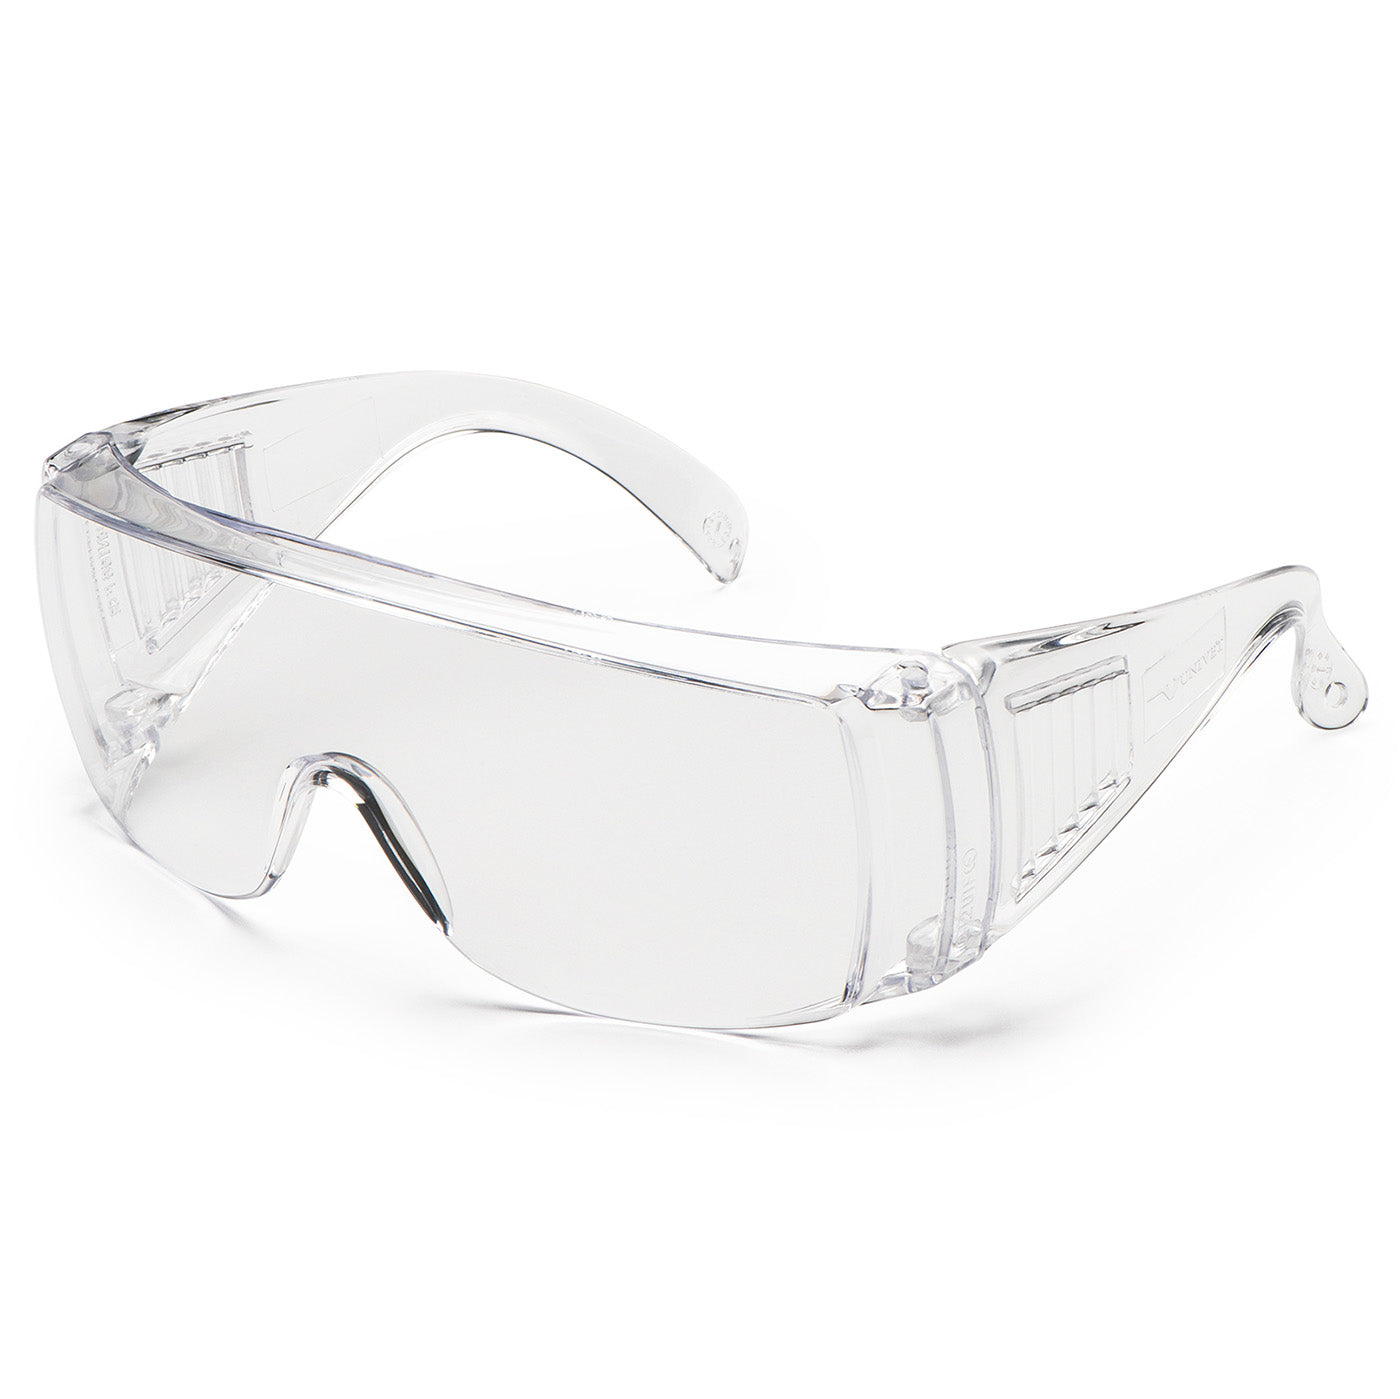 Univet 520 Clear Overspec Safety Glasses - 520110000